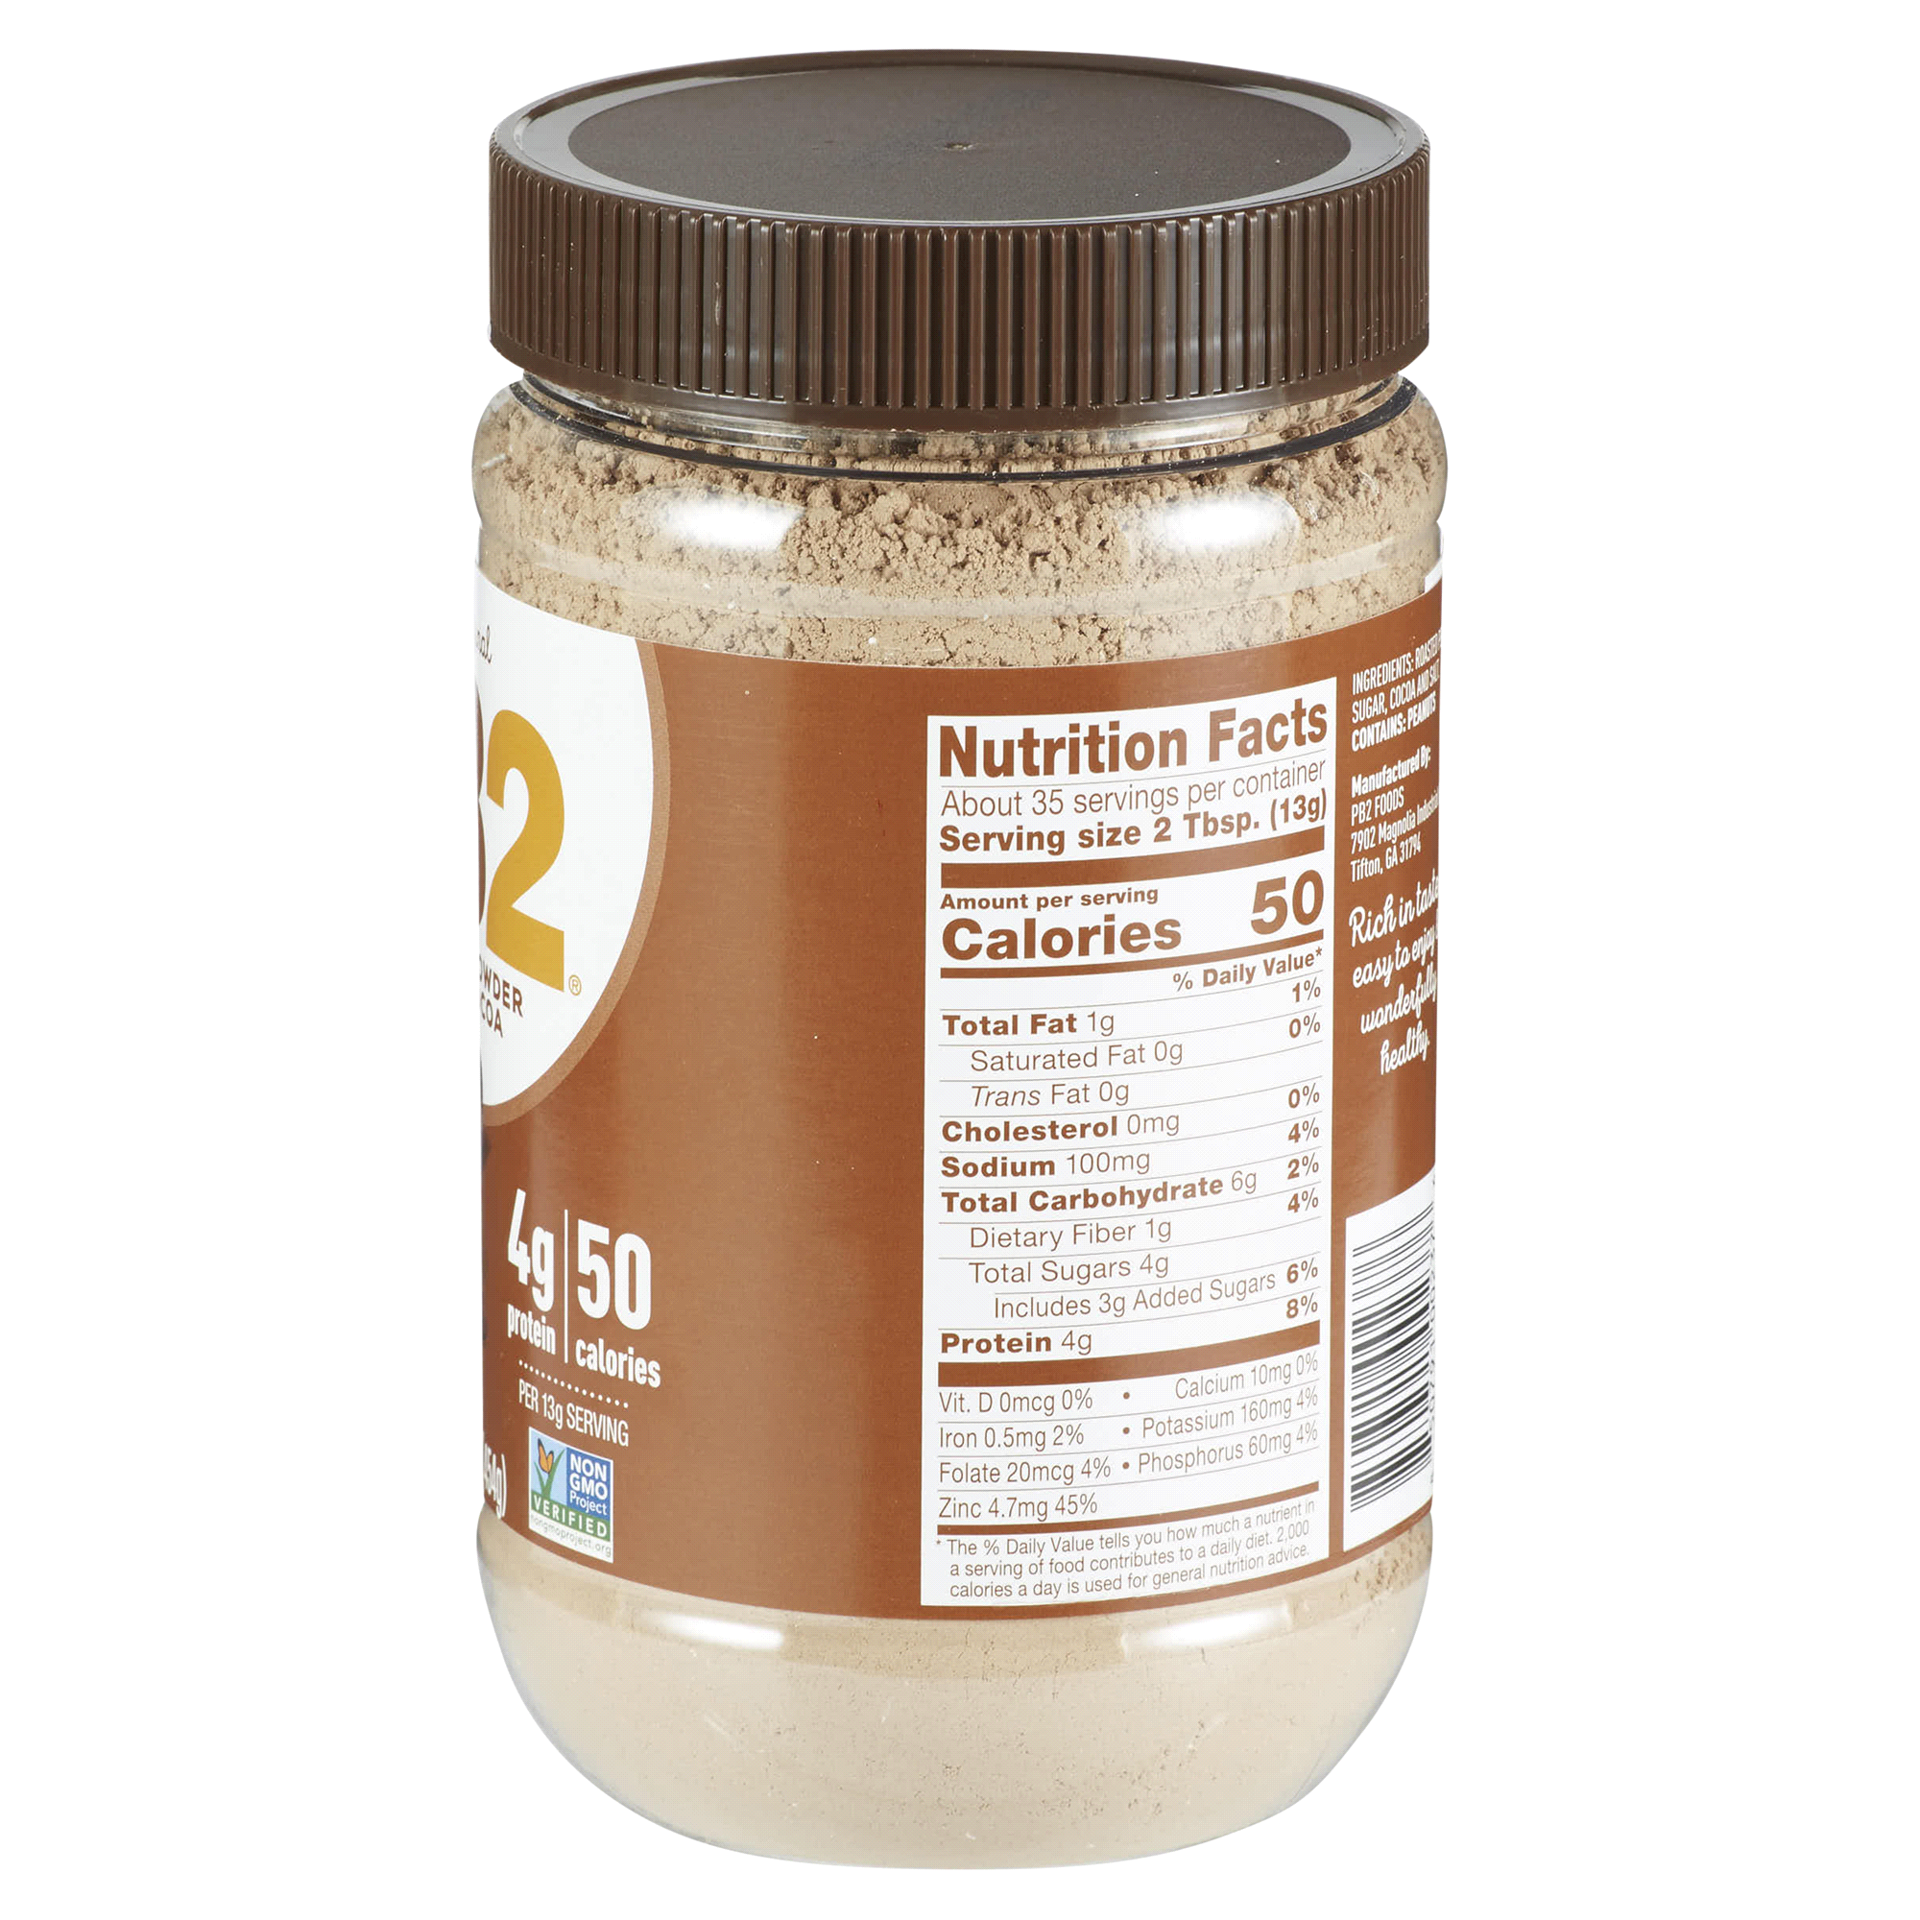 PB2® Powdered Peanut Butter, 24 oz - Food 4 Less